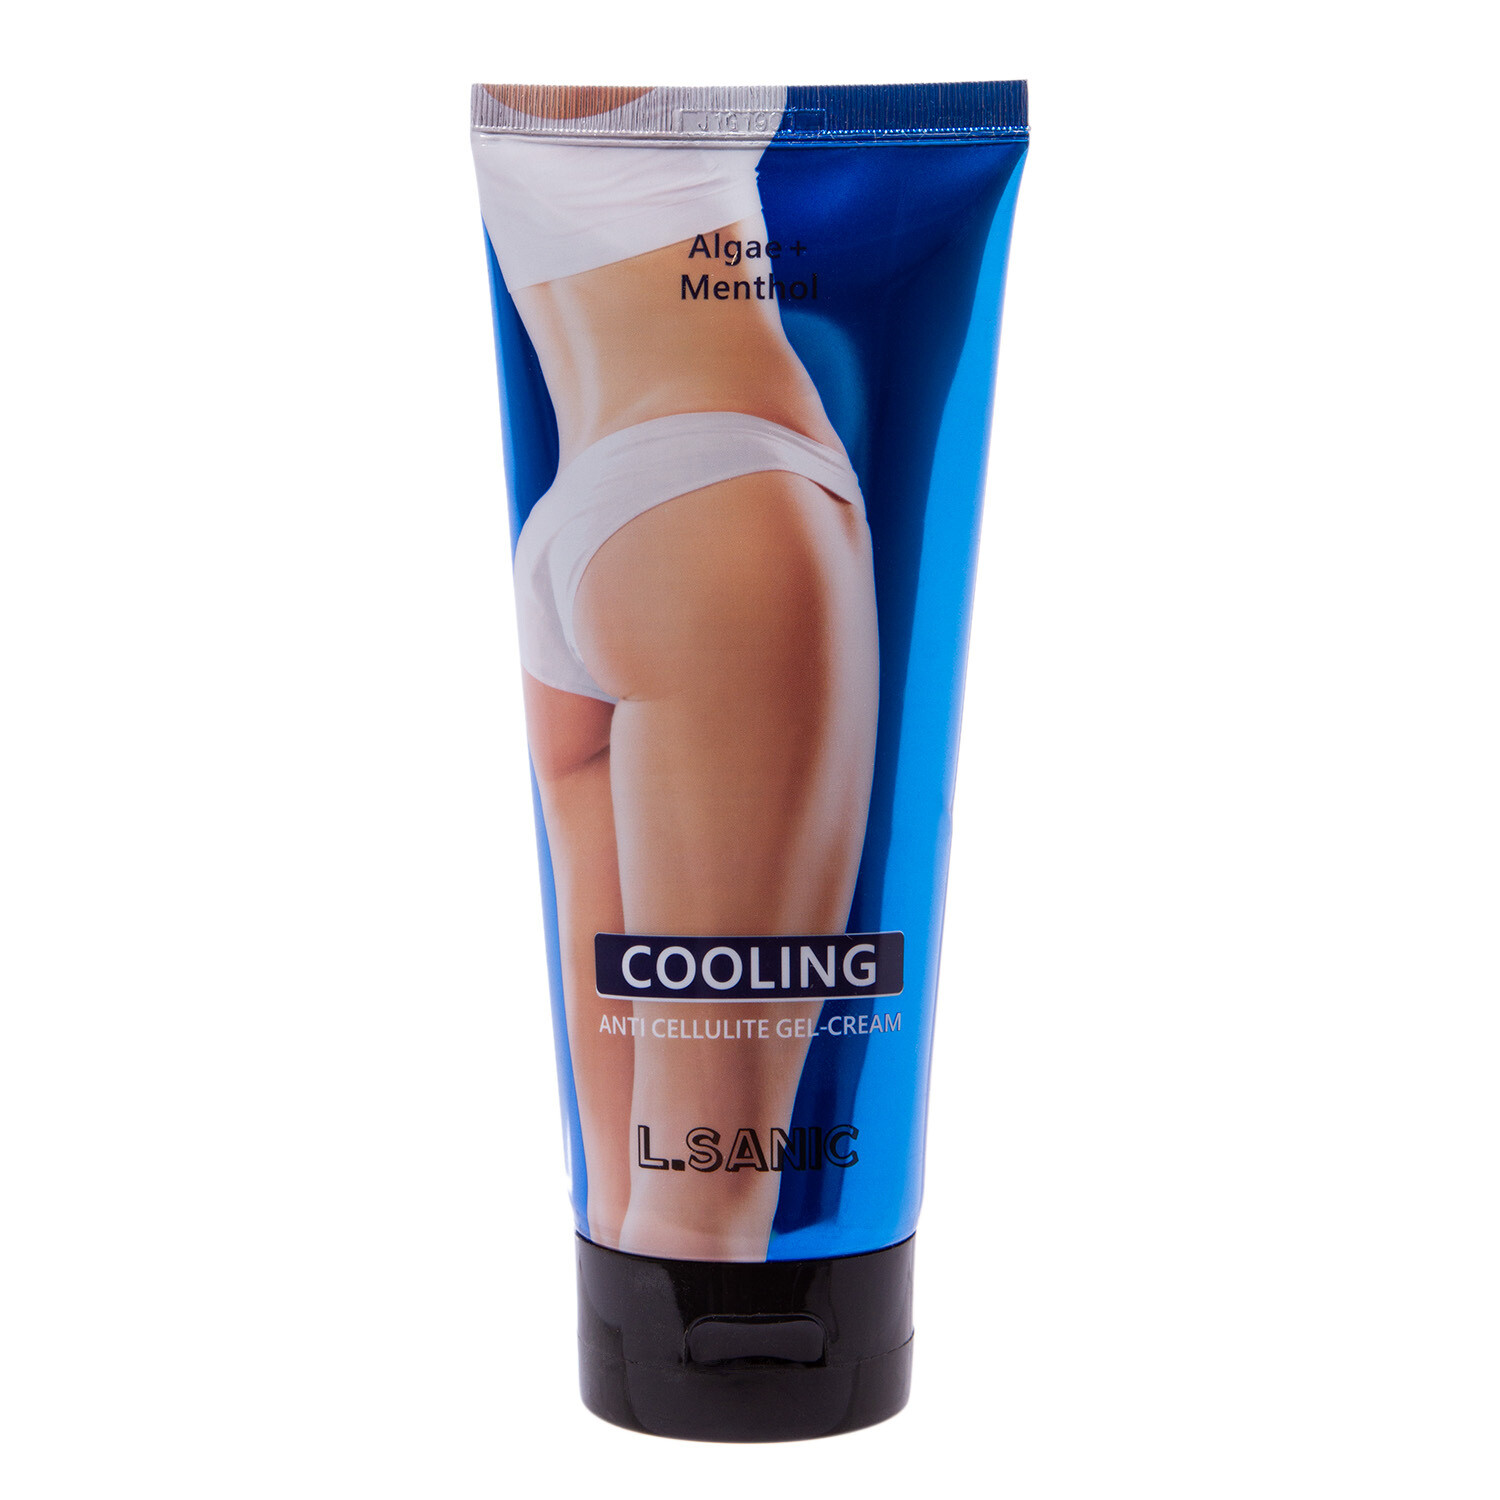 L.Sanic Cooling Anti Cellulite Body Gel-Cream Антицеллюлитный гель-крем с охлаждающим эффектом